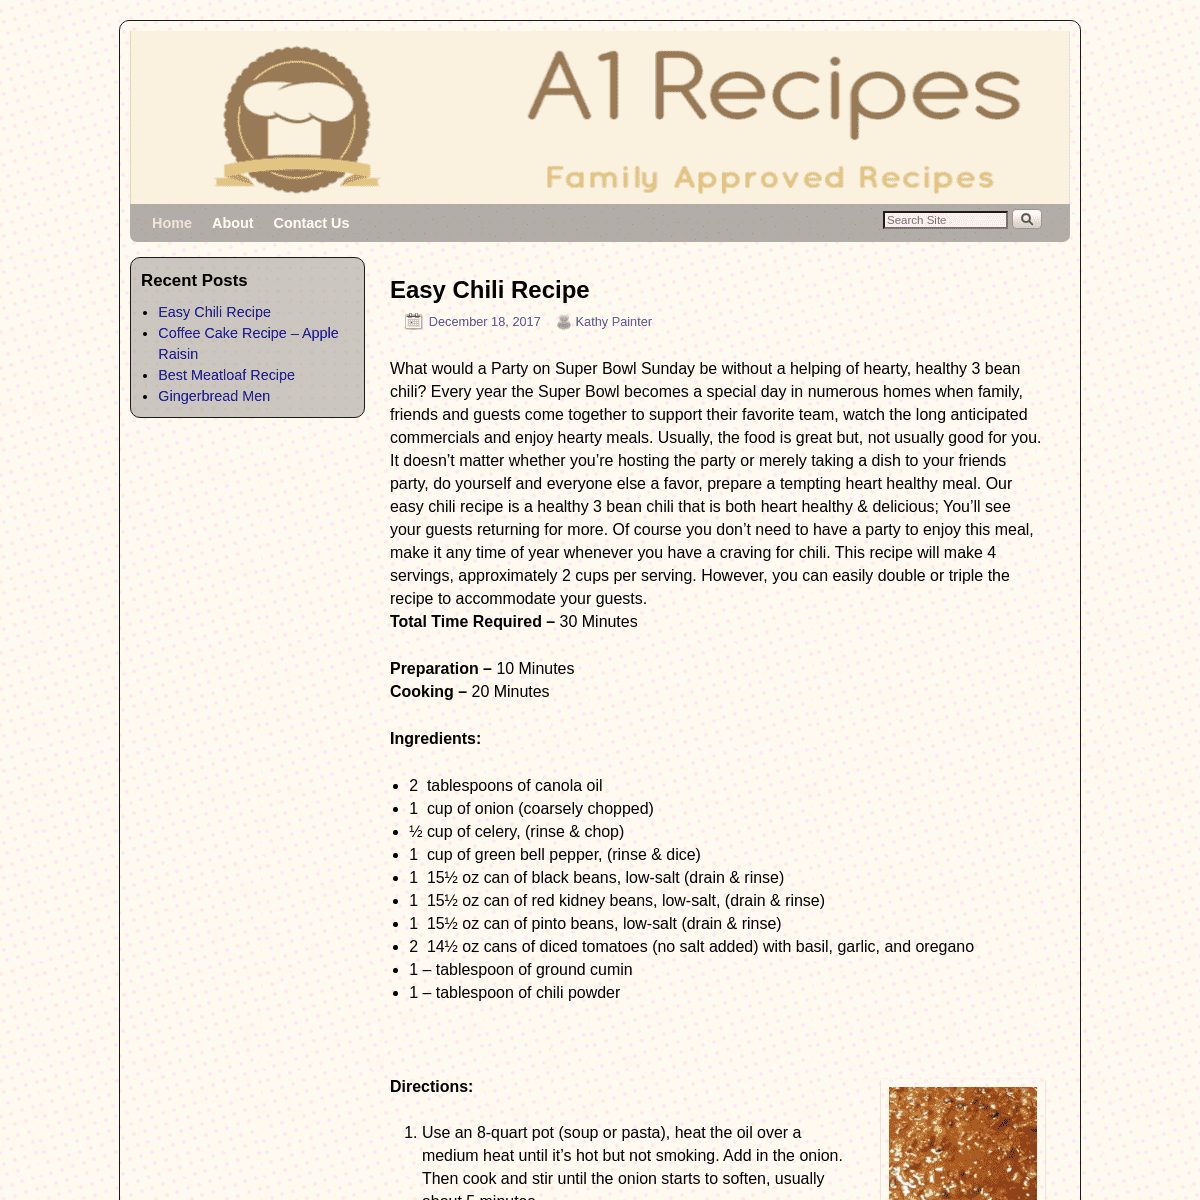 A complete backup of https://a1-recipes-4u.com